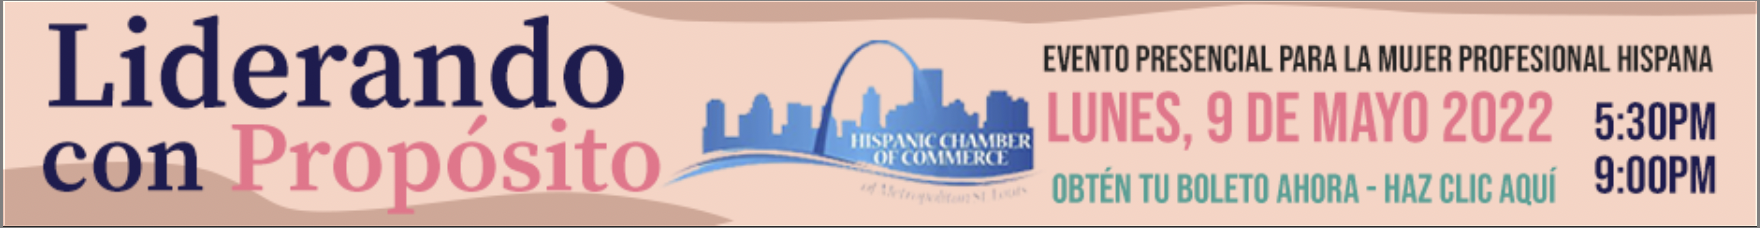 Hispanic Working Women Event - Hispanic Chamber of Commerce of St. Louis